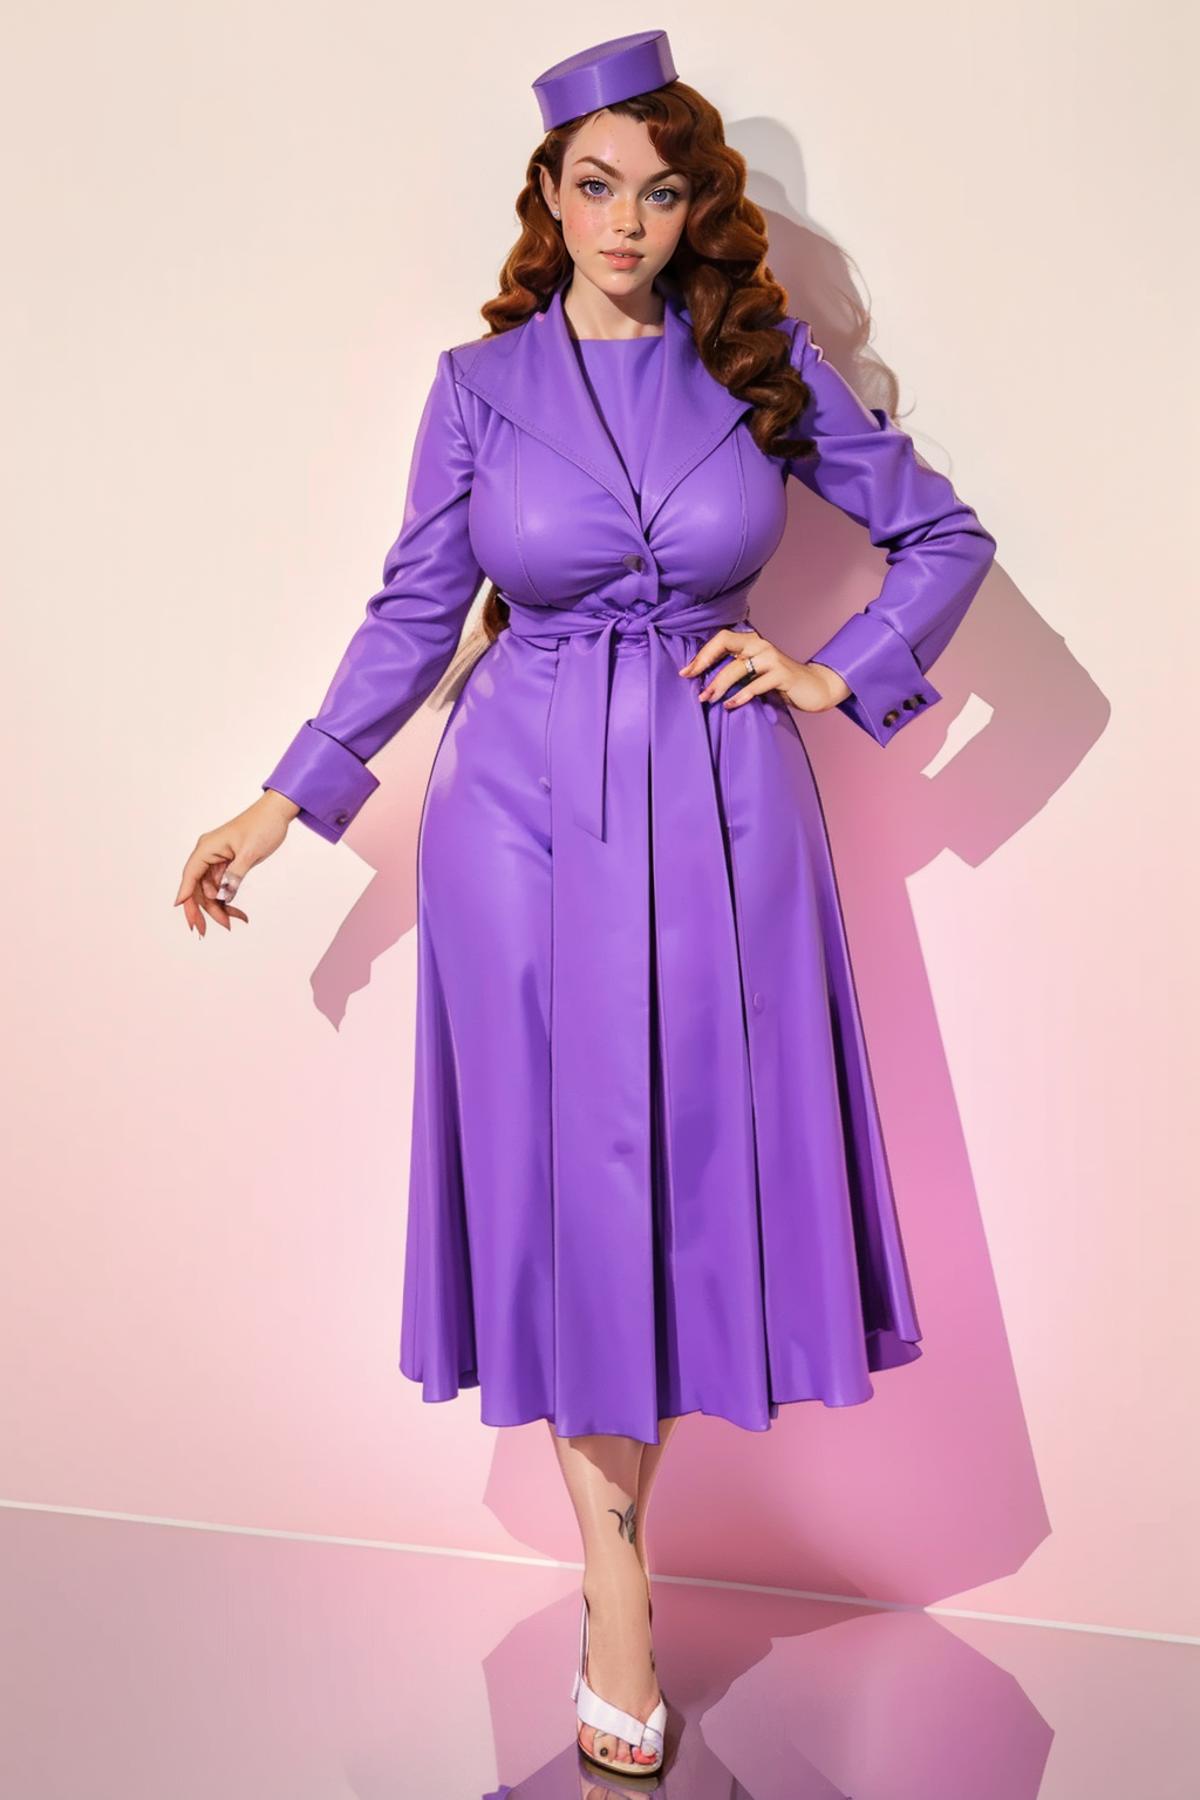 Lilac Vix Retro Coat/Dress image by freckledvixon